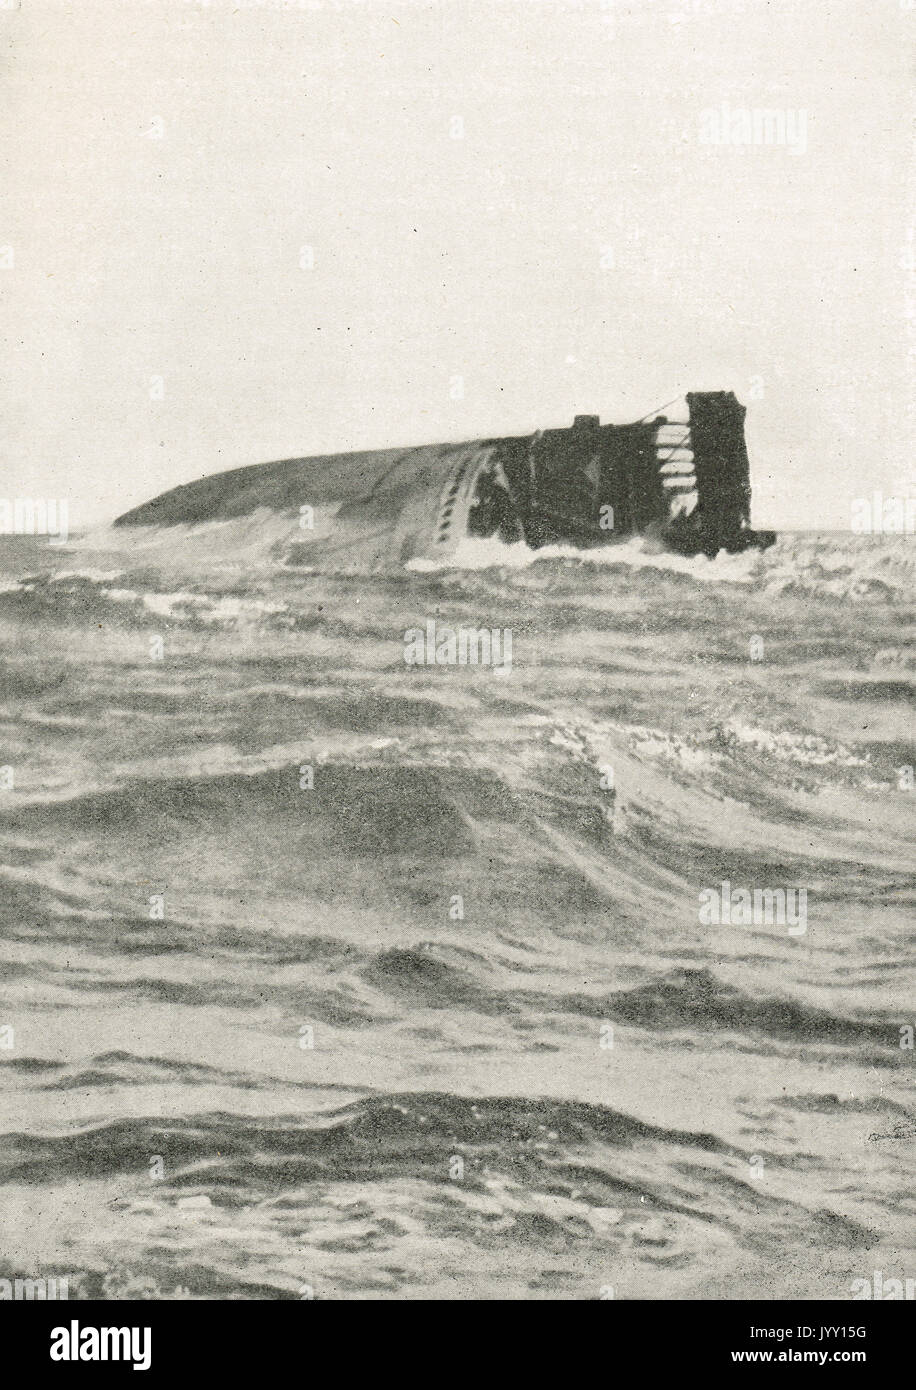 SS Kaiser Wilhelm der Grosse sinking after attack by HMS Highflyer, 26 August 1914, WW1 Stock Photo